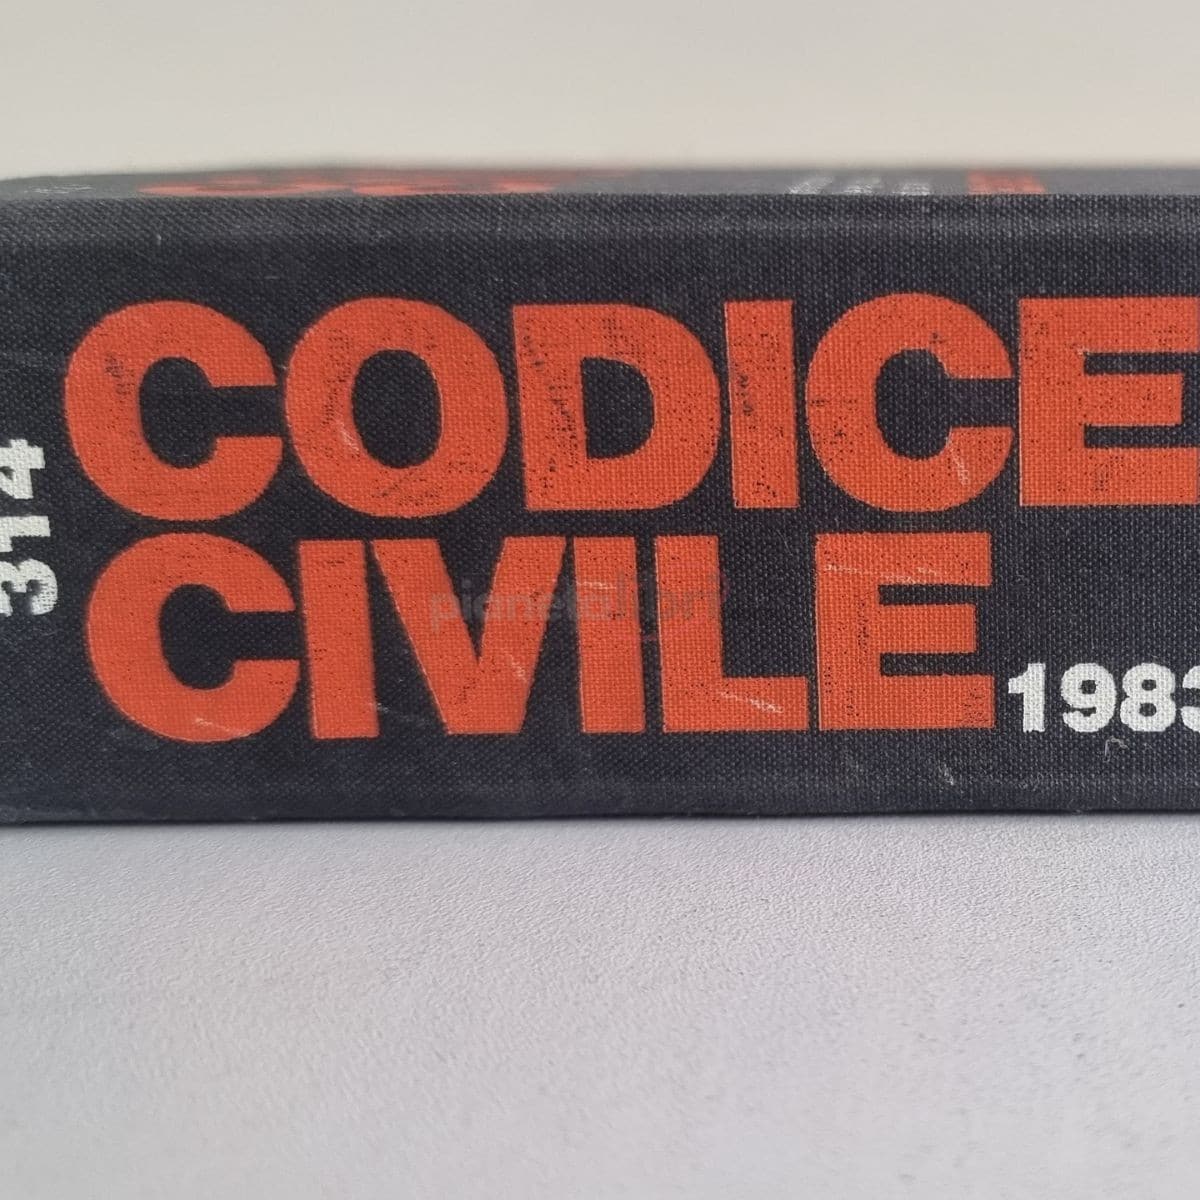 Codice Civile